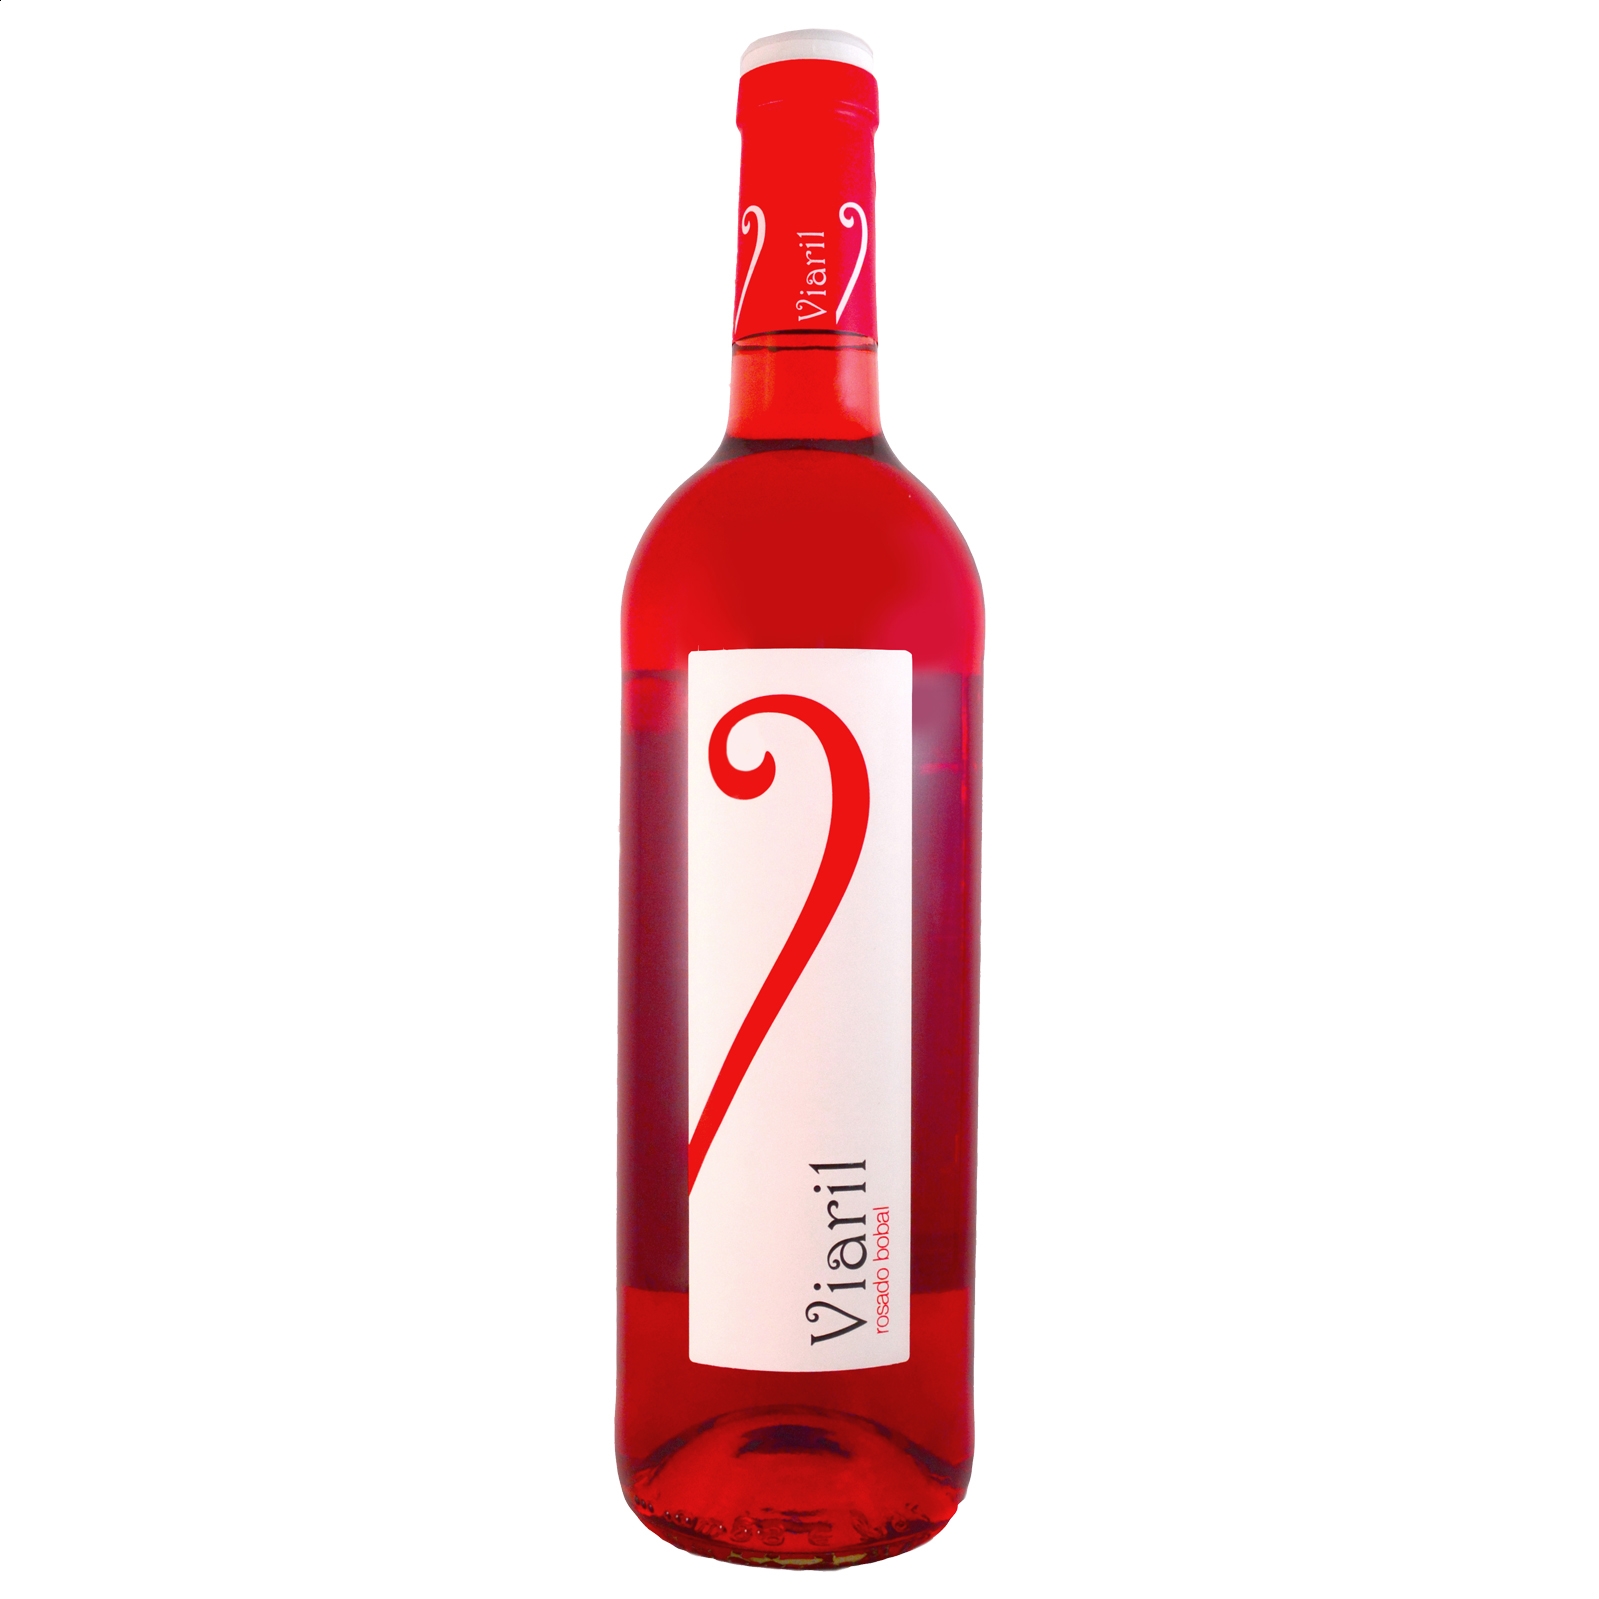 Viaril - Lote variado, vino blanco, rosado y tinto D.O.P. Manchuela, 75cl 3uds